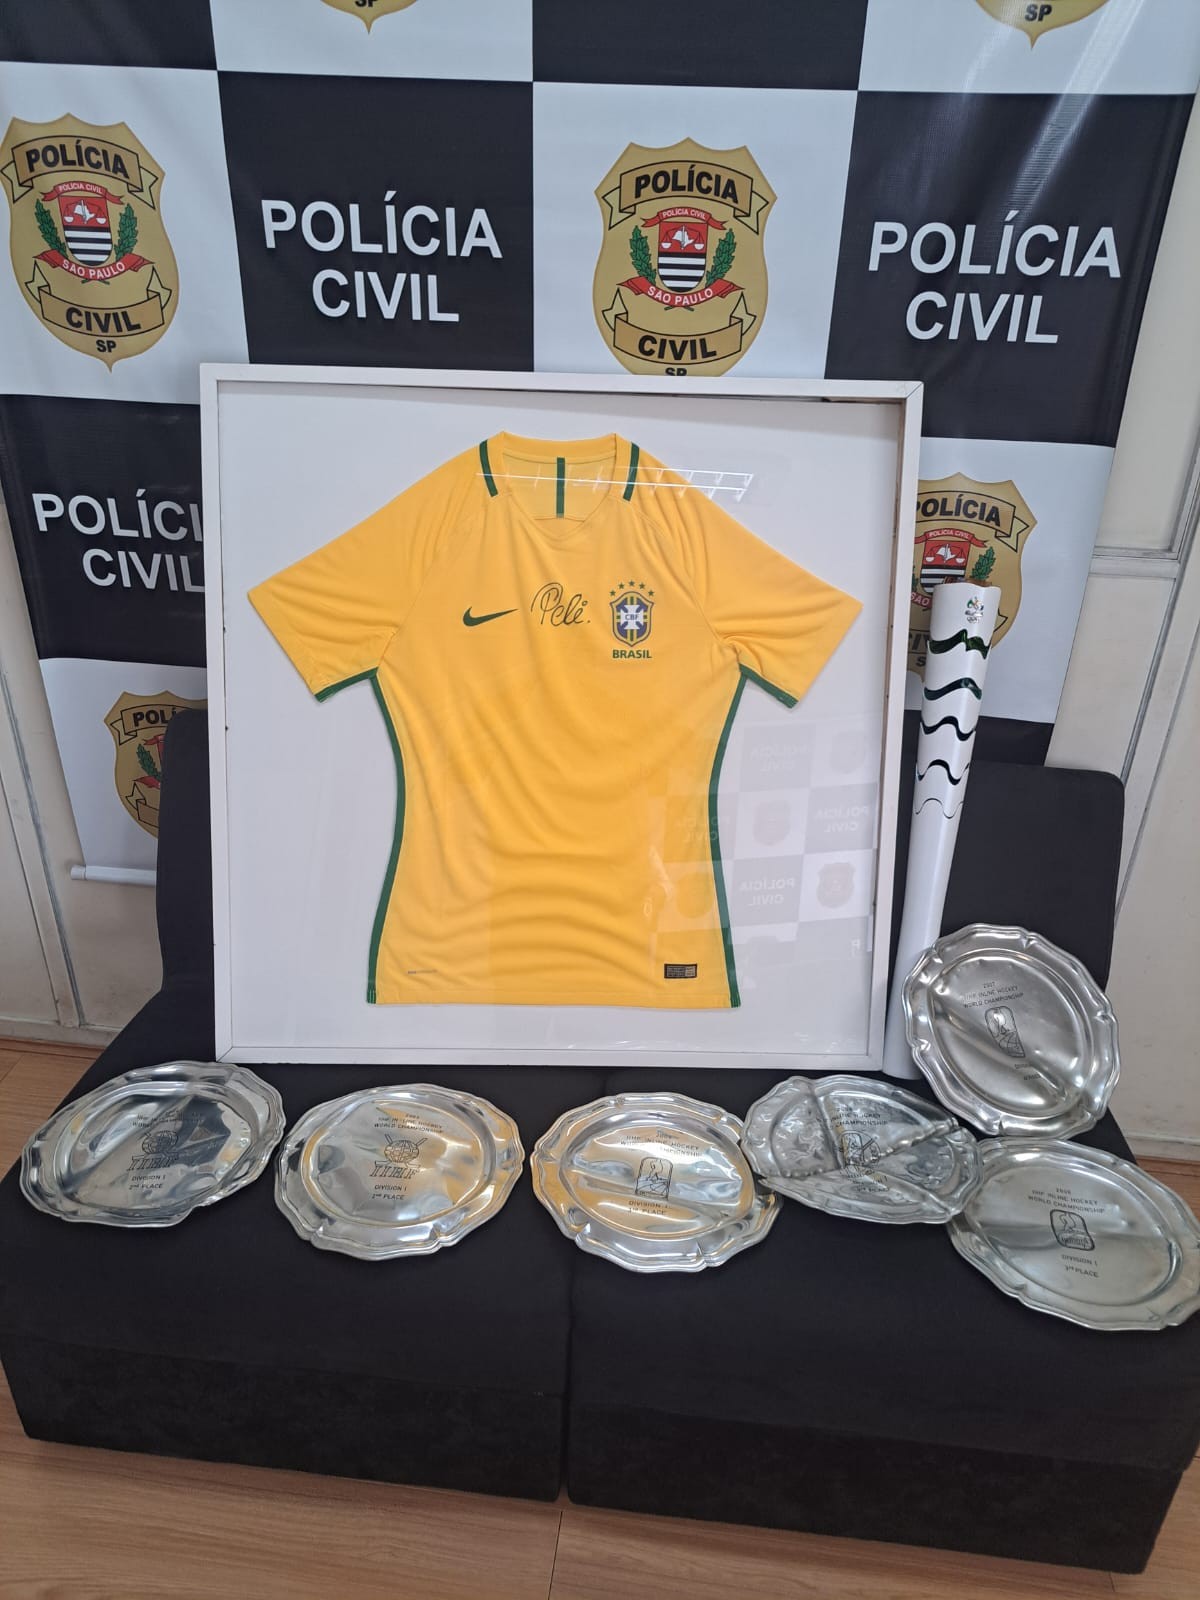 Polícia recupera camisa da Seleção autografada por Pelé e tocha olímpica furtadas em Campinas